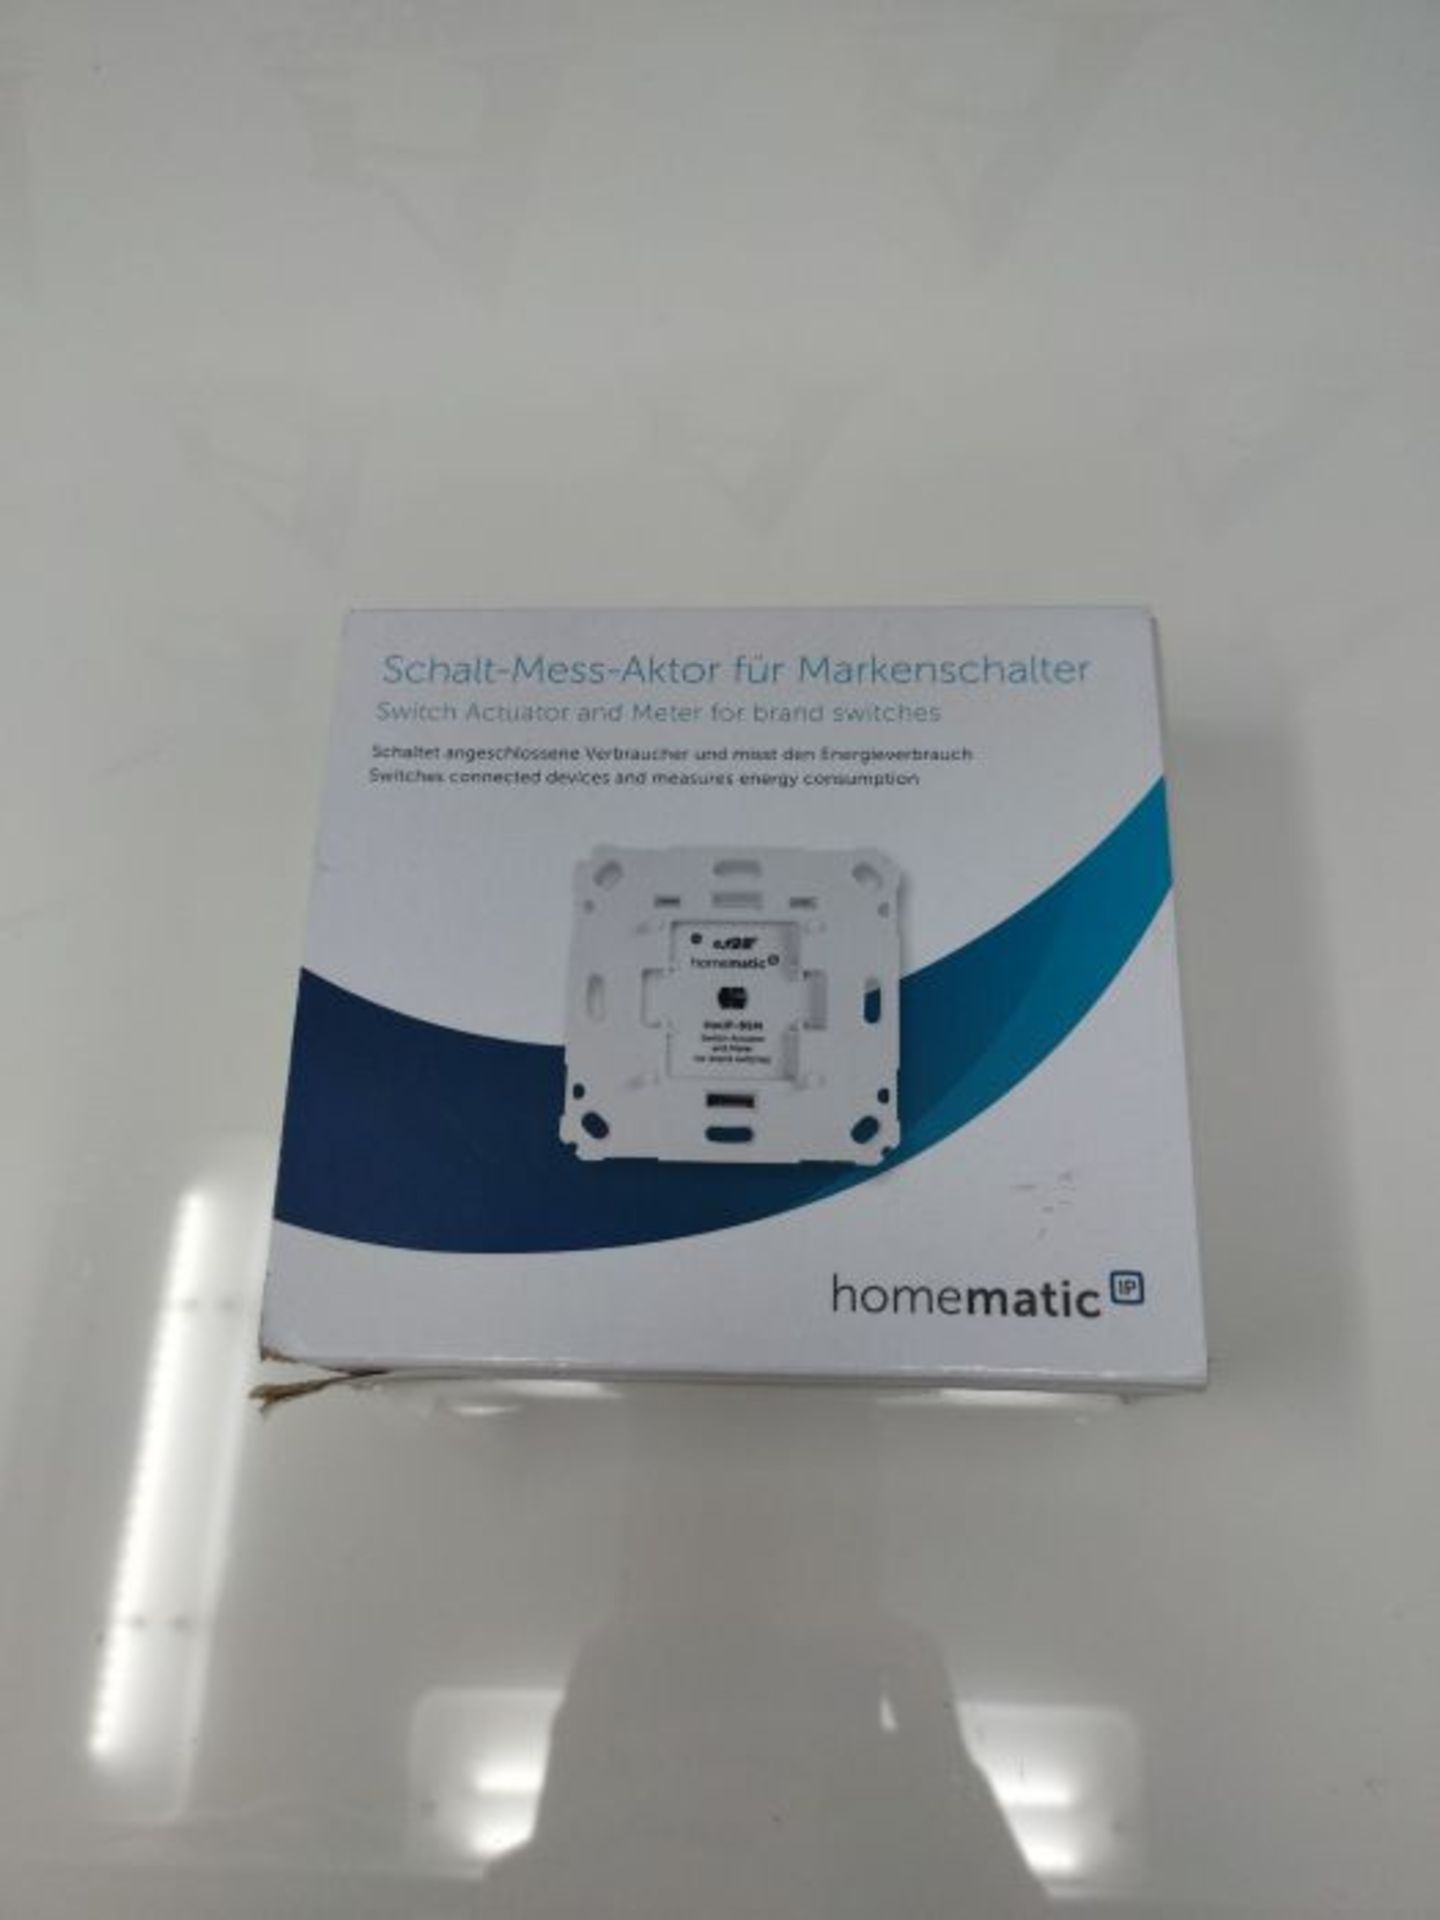 RRP £50.00 Homematic IP Smart Home Schalt-Mess-Aktor für Markenschalter, schaltet Geräte auch p